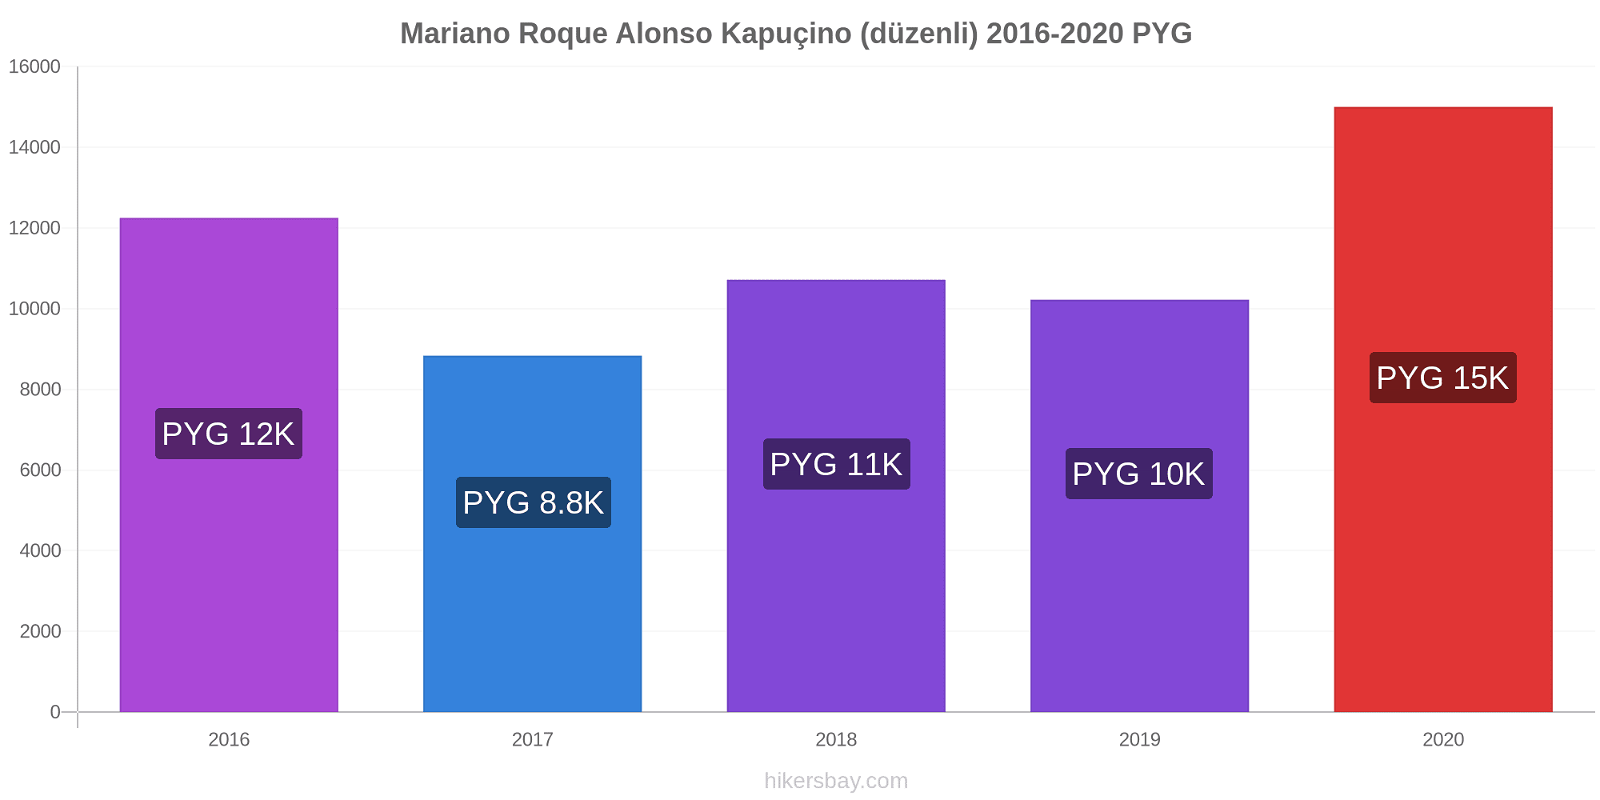 Mariano Roque Alonso fiyat değişiklikleri Kapuçino (düzenli) hikersbay.com